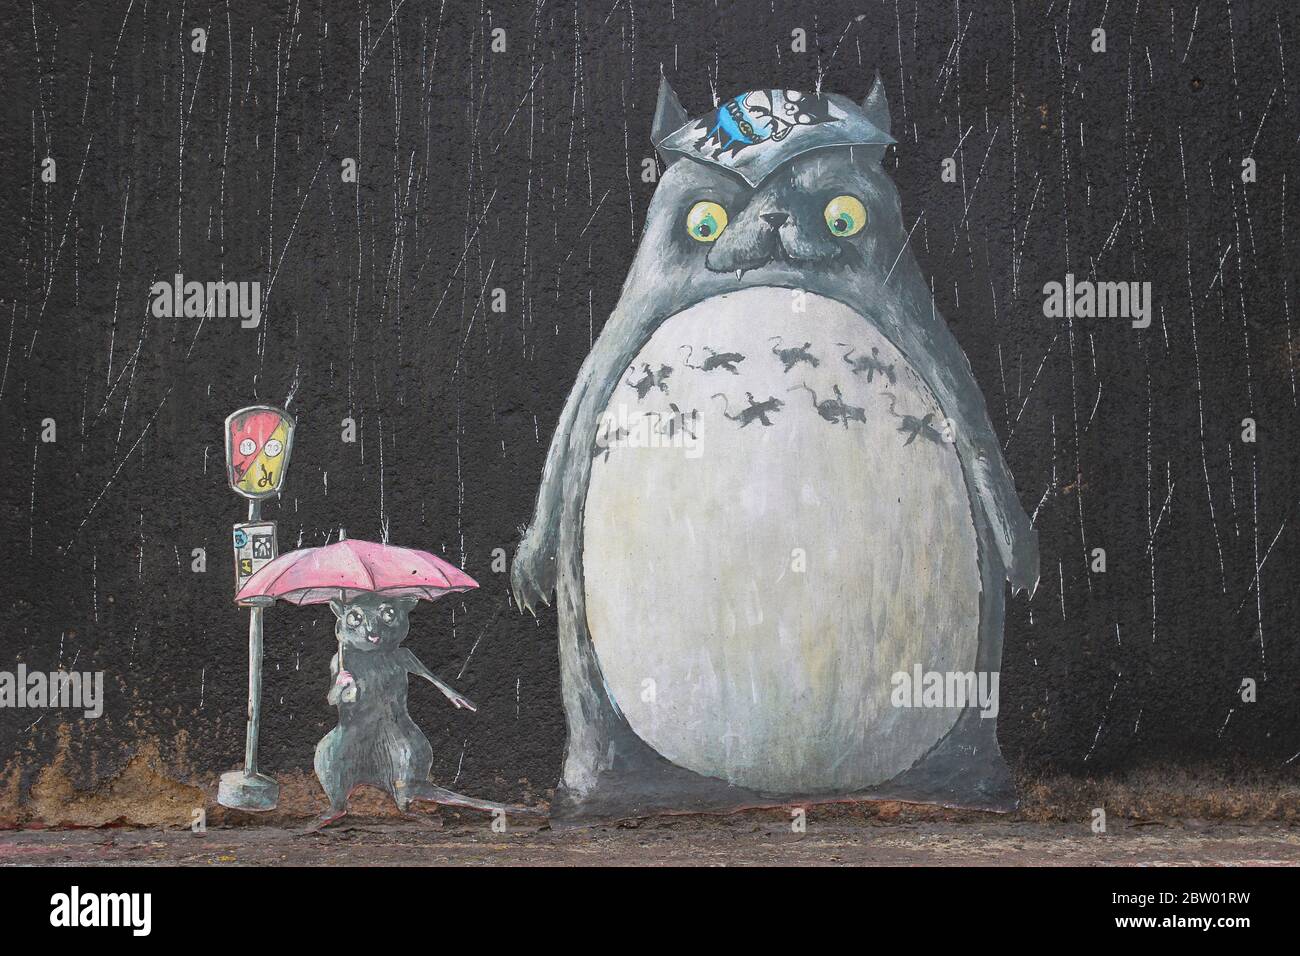 Graffiti Paste UPS Art de Lost Hills de la película de animación de Miyazaki "Mi vecino Totoro". Foto de stock